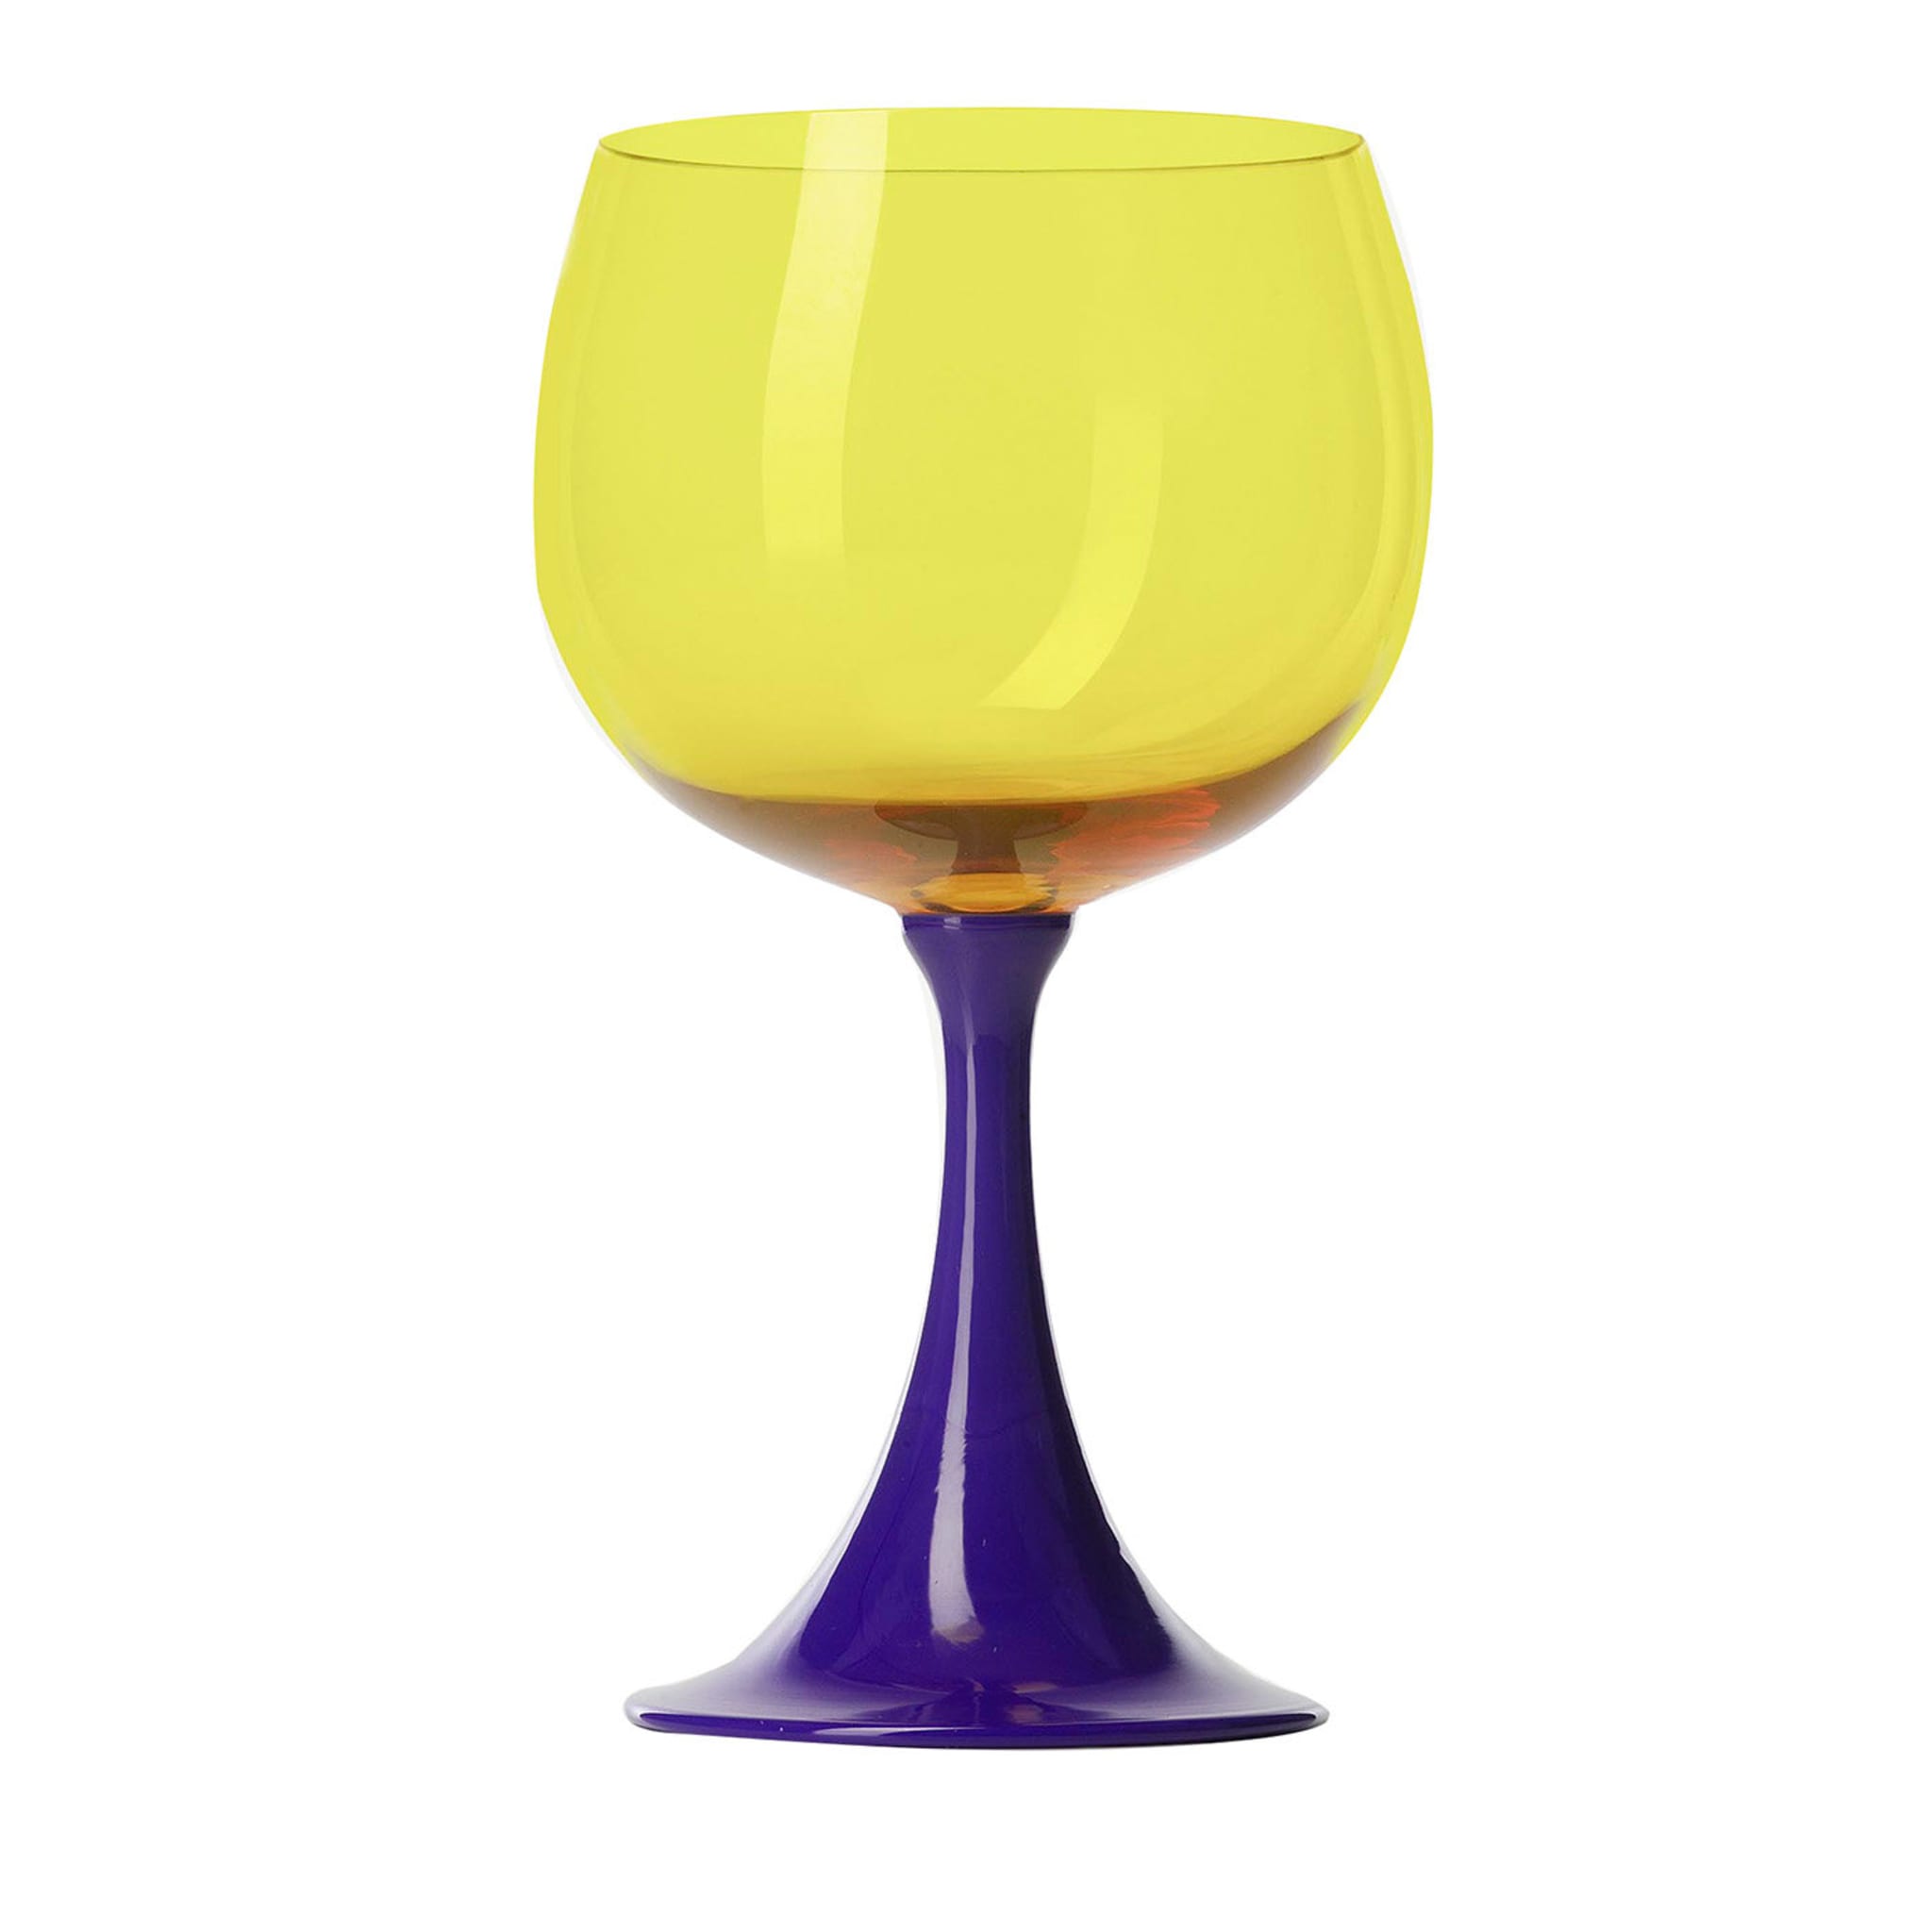 Burlesque Yellow Burgundy Glass di NasonMoretti e Stefano Marcato - Vista principale